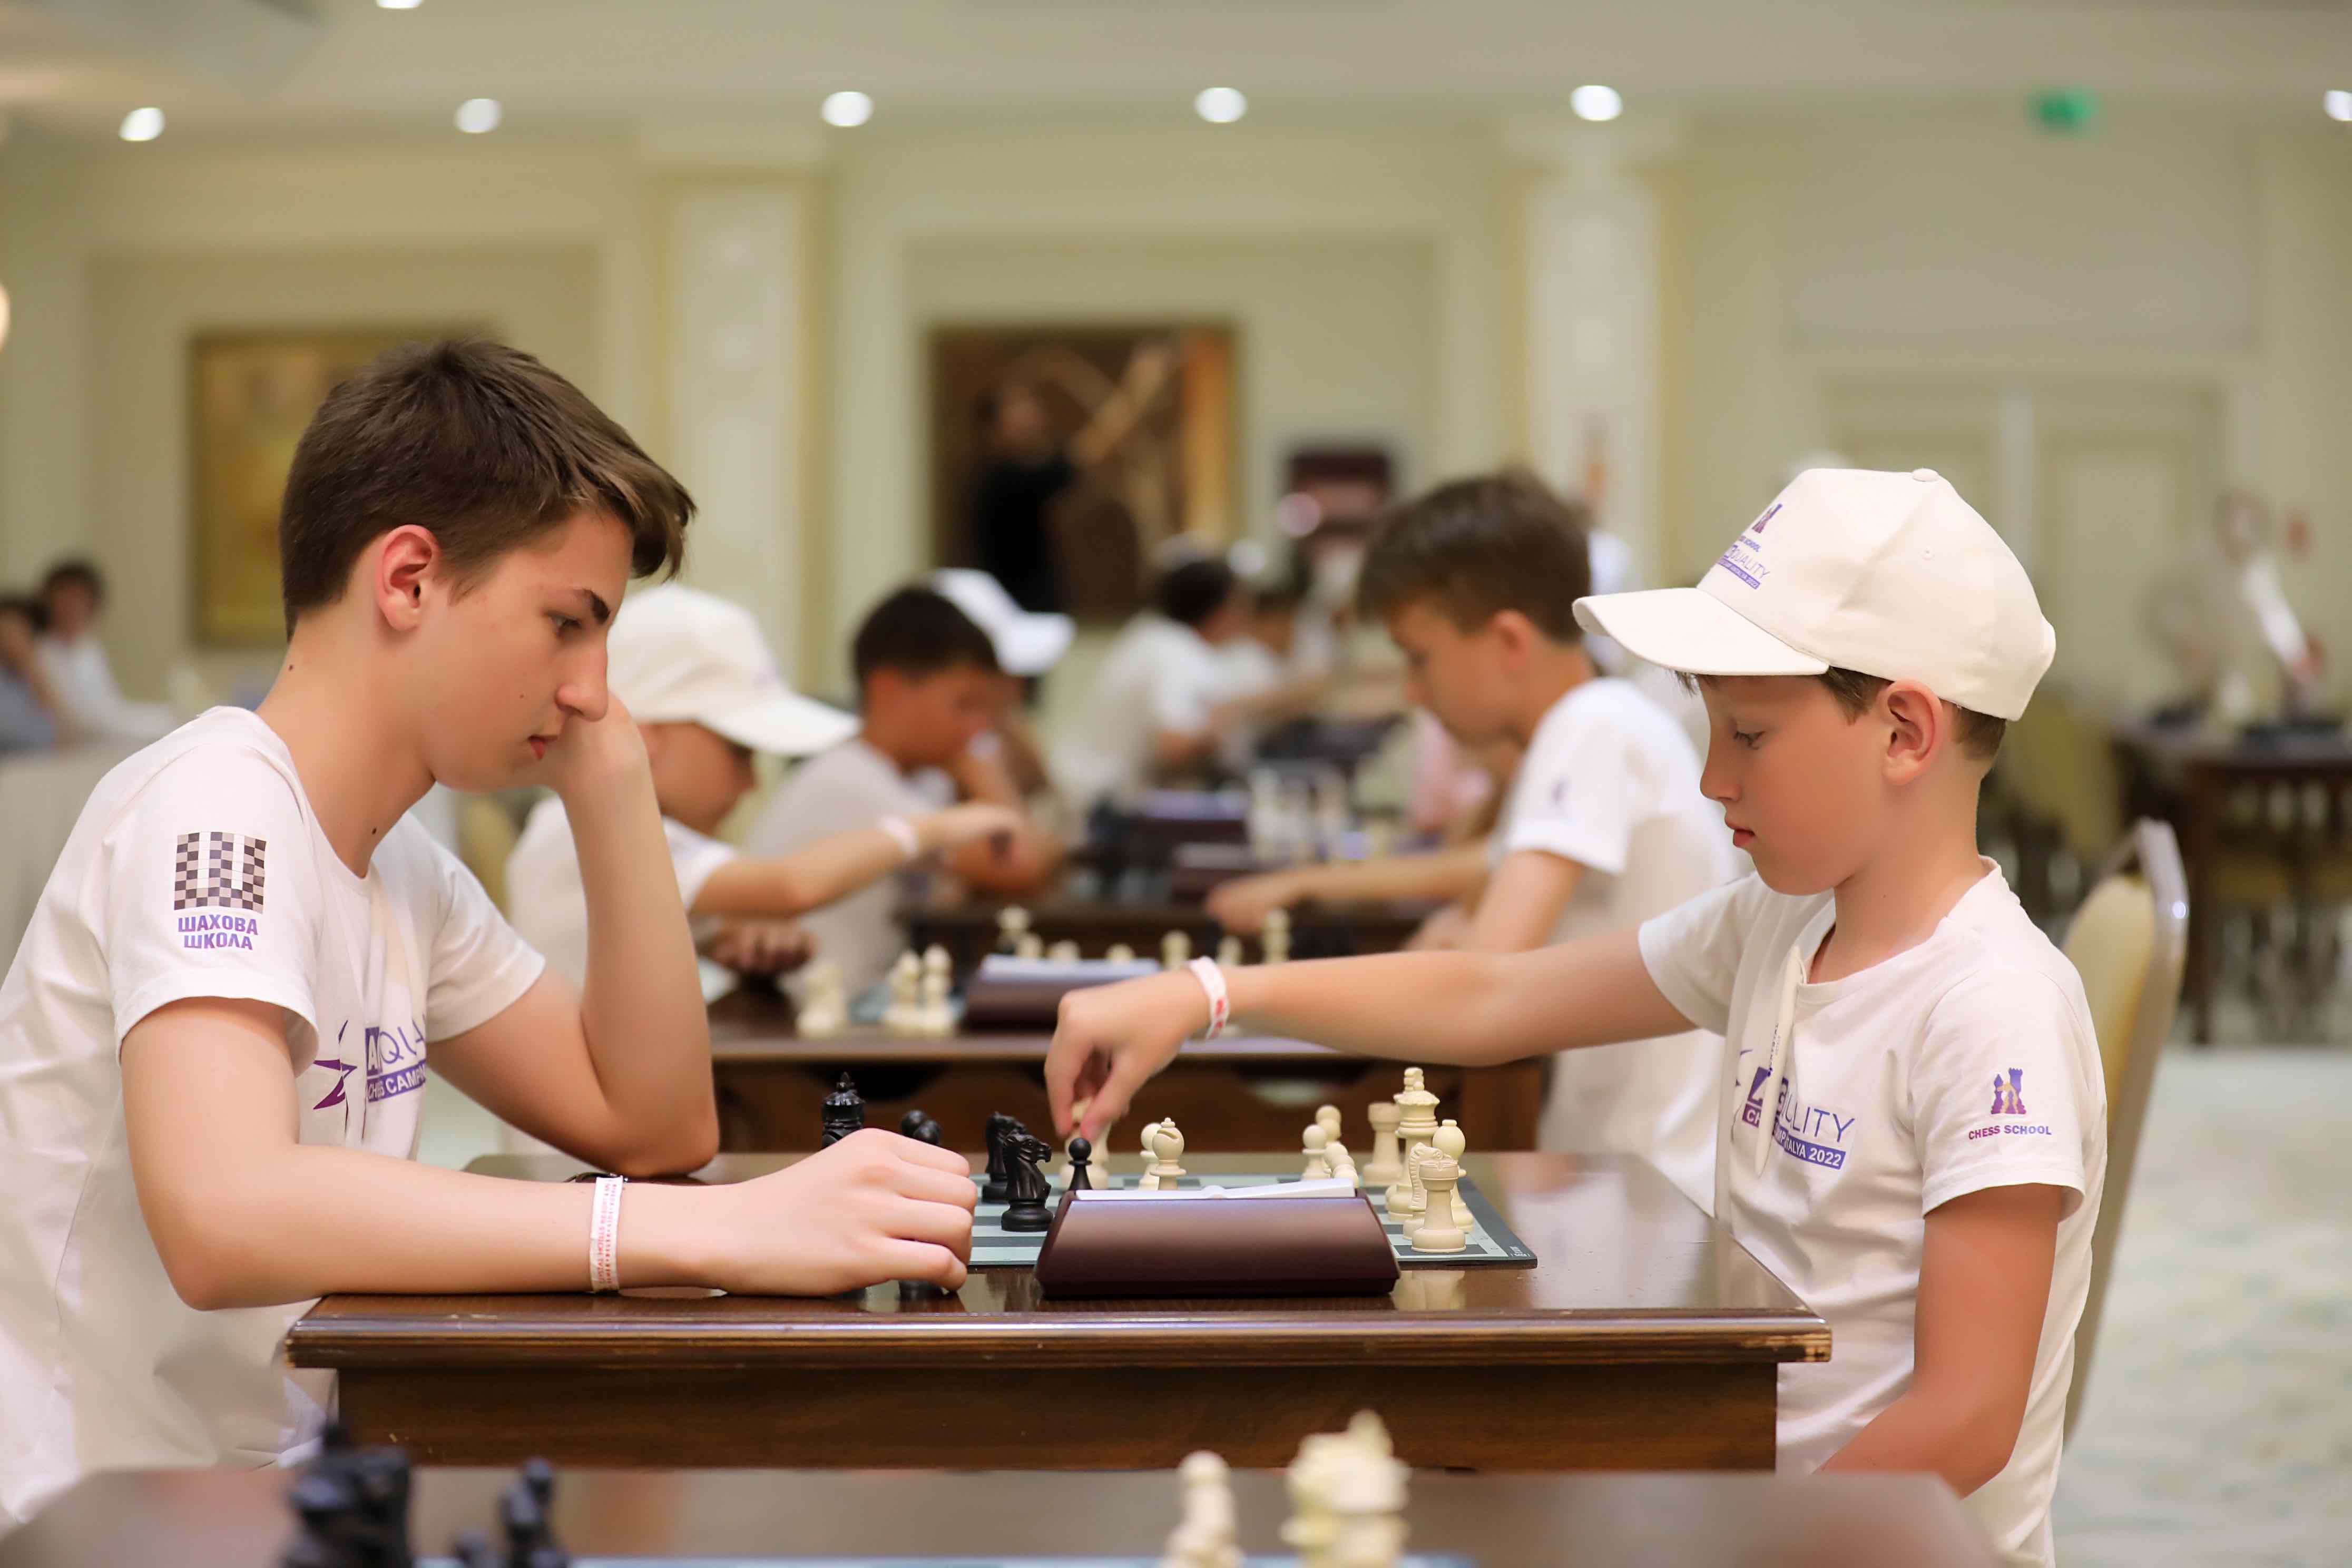 У Туреччині завершились підготовчі збори юних українських шахістів до чемпіонатів Європи